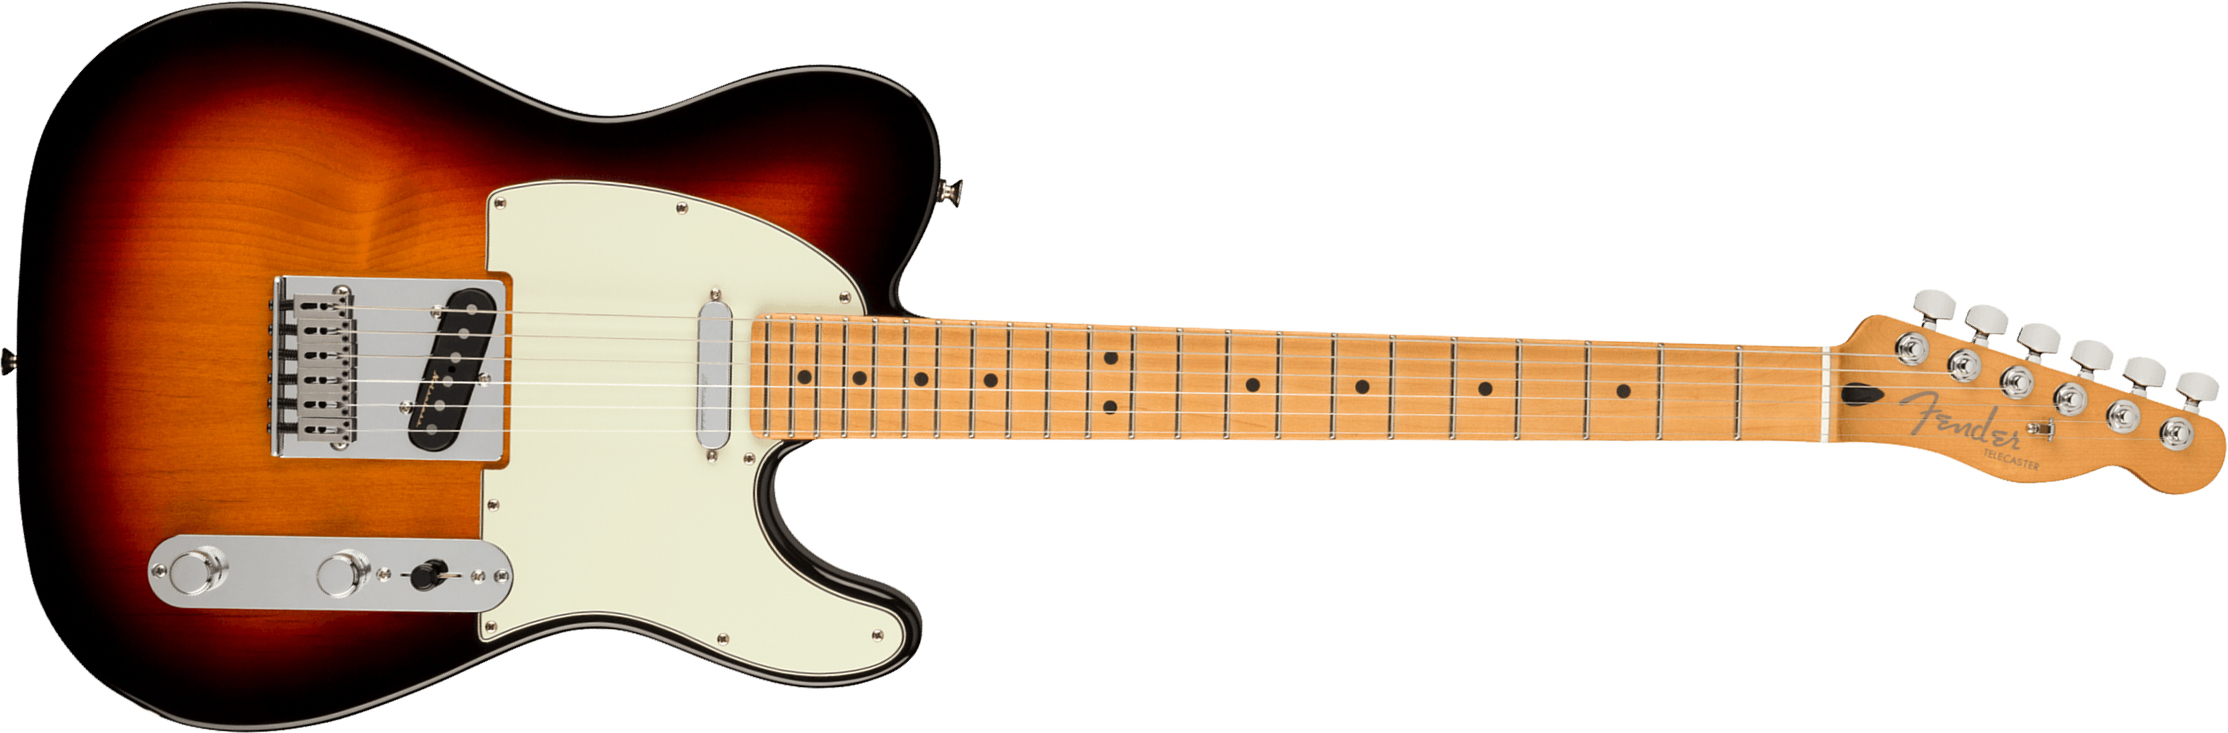 Fender Tele Player Plus Mex 2s Ht Mn - 3-color Sunburst - Tel shape electric guitar - Main picture